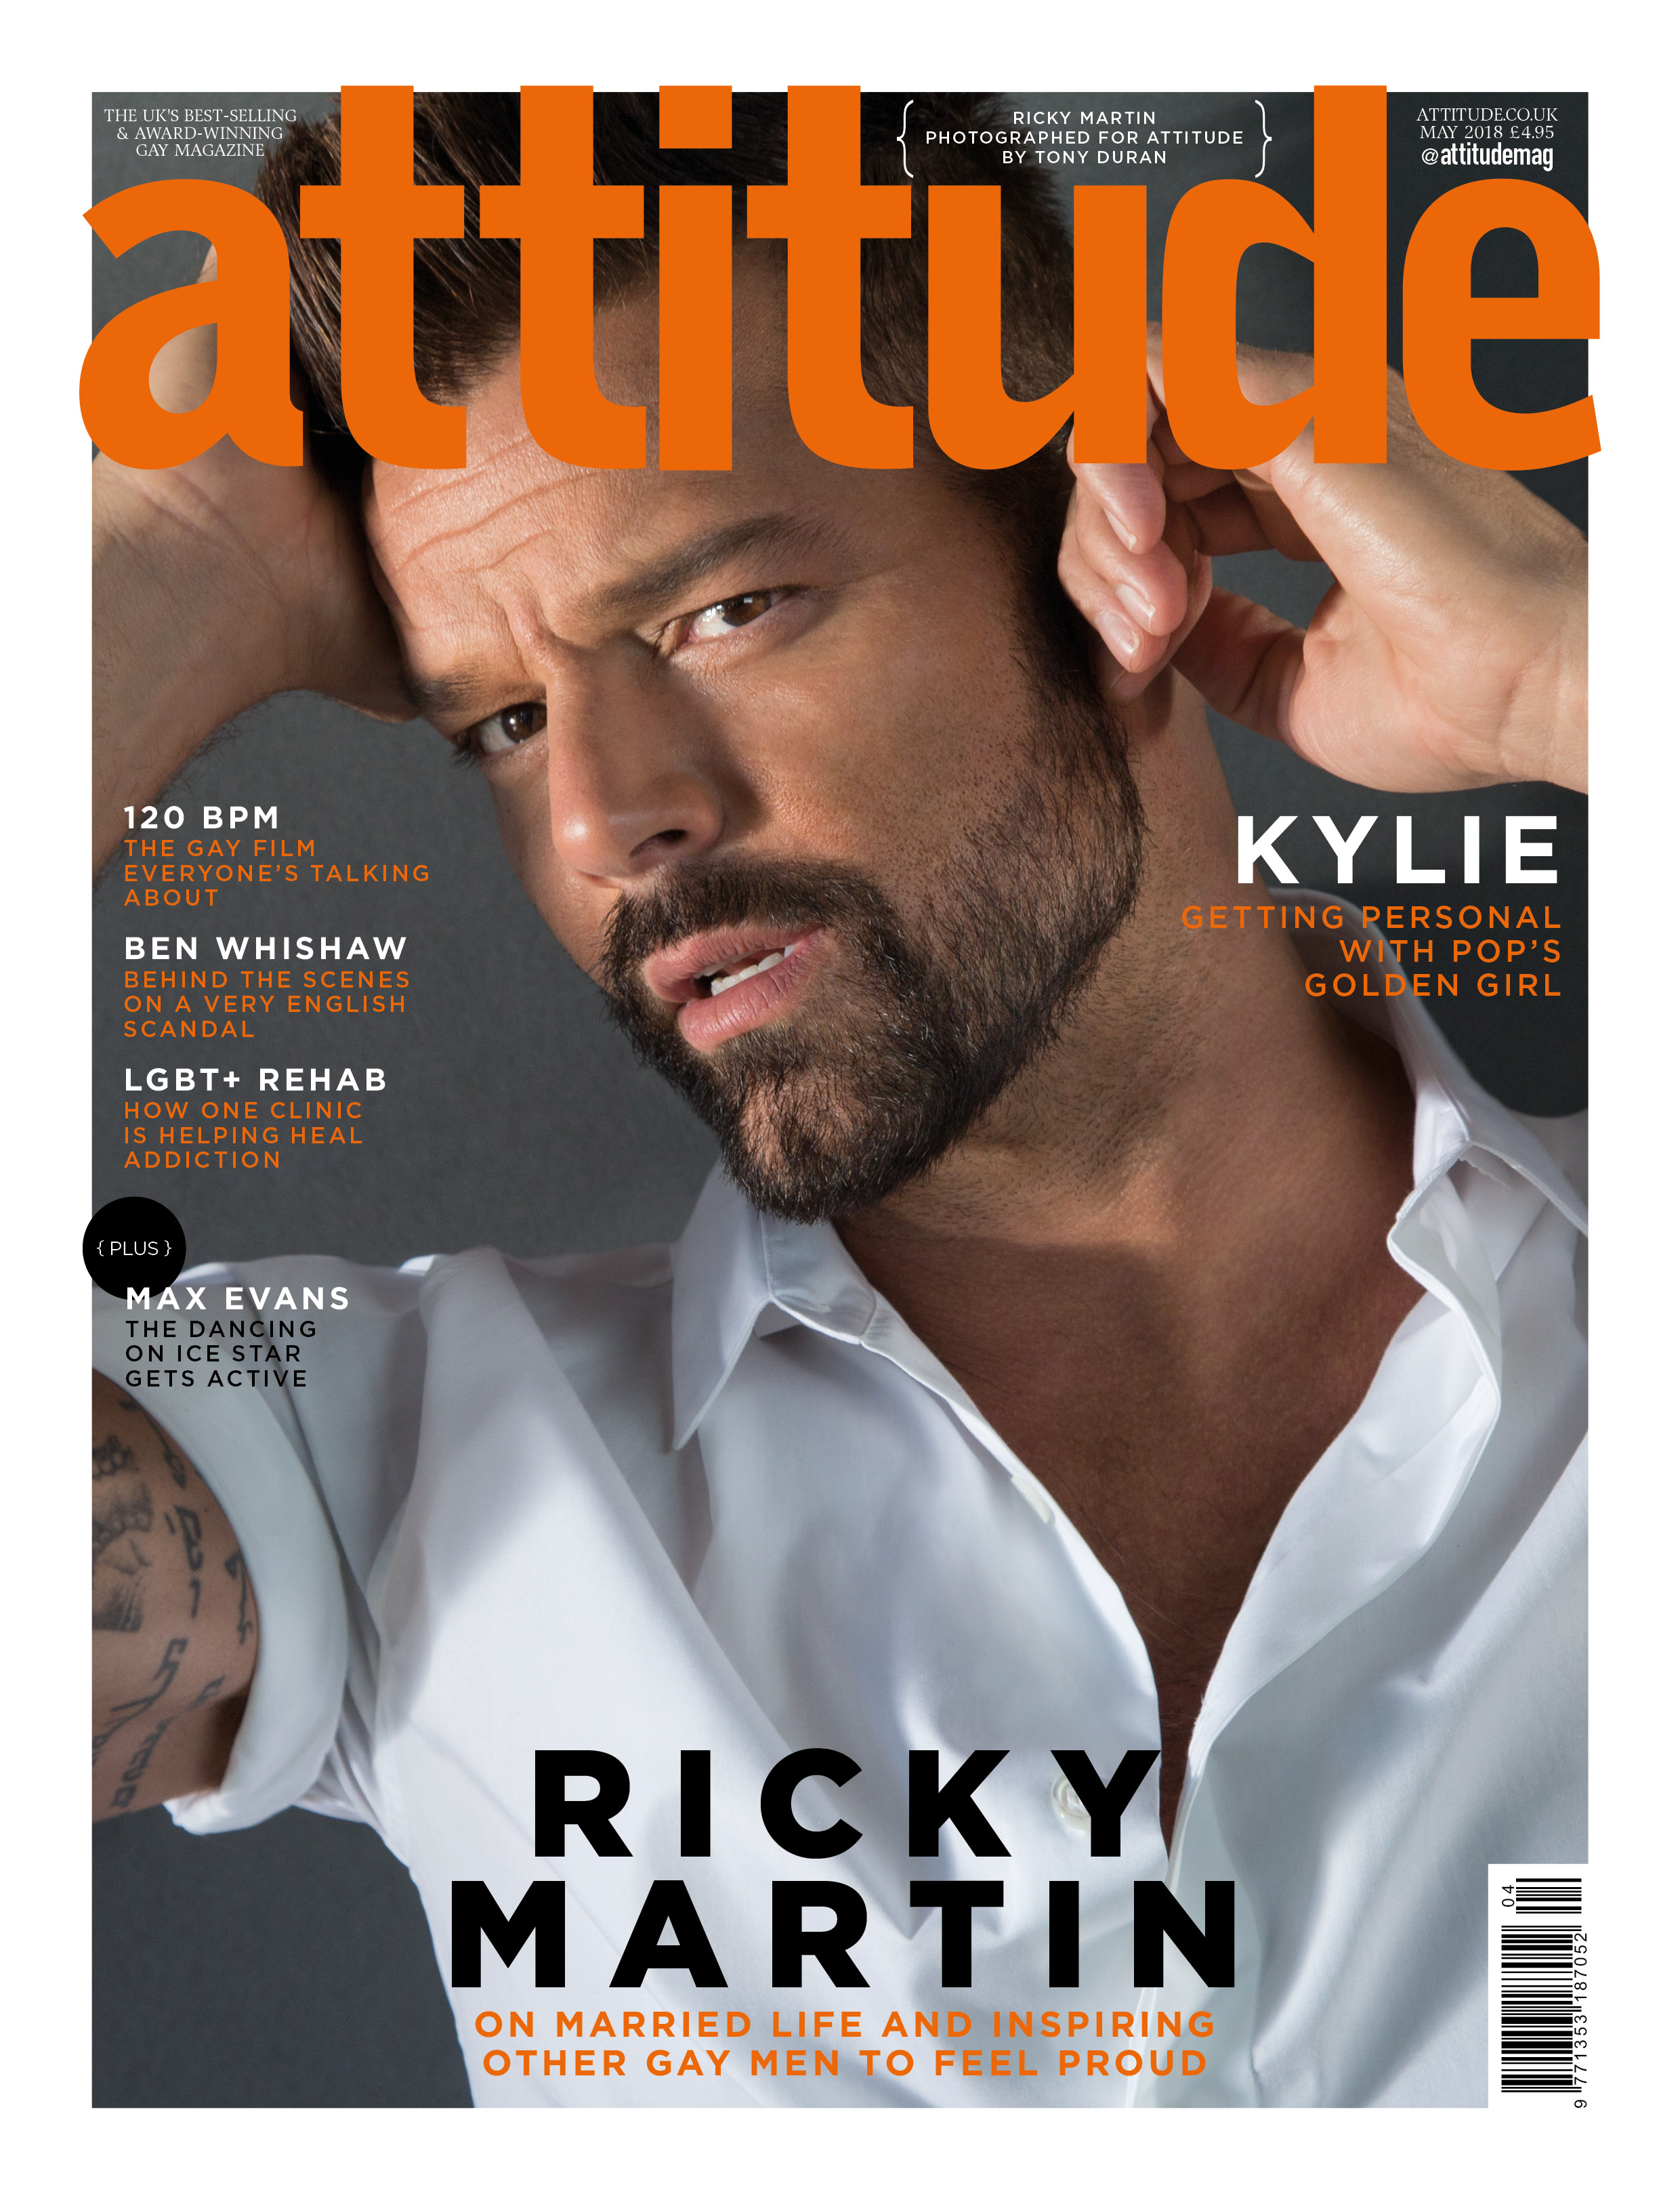 Ricky Martin on Attitude